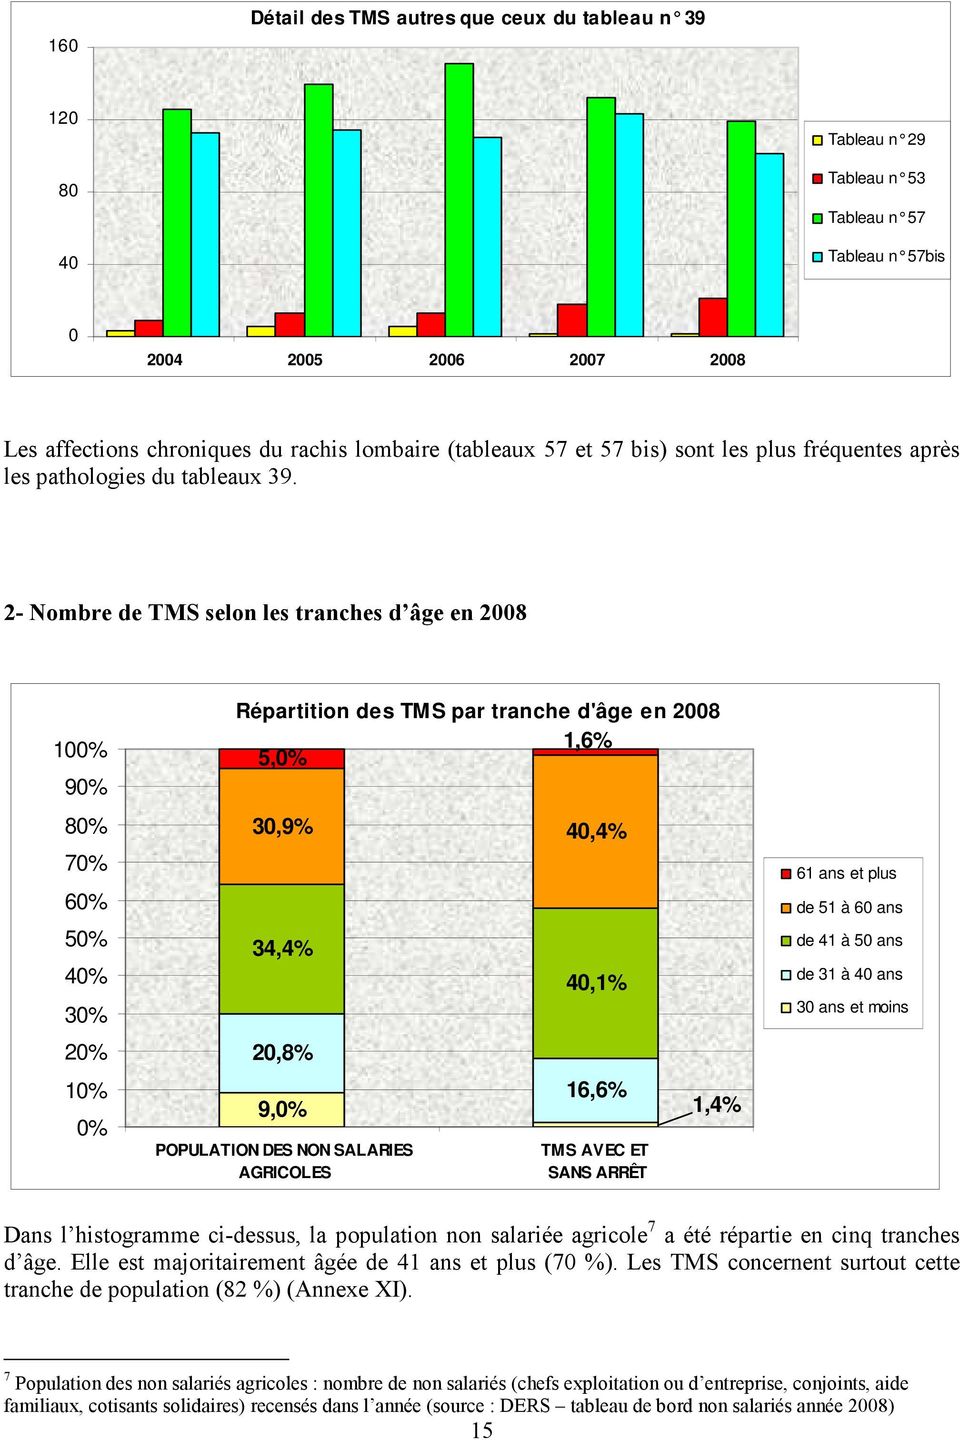 2- Nombre de TMS selon les tranches d âge en 2008 100% 90% 80% 70% 60% 50% 40% 30% 20% 10% 0% Répartition des TM S par tranche d'âge en 2008 1,6% 5,0% 30,9% 40,4% 34,4% 20,8% 9,0% POPULATION DES NON